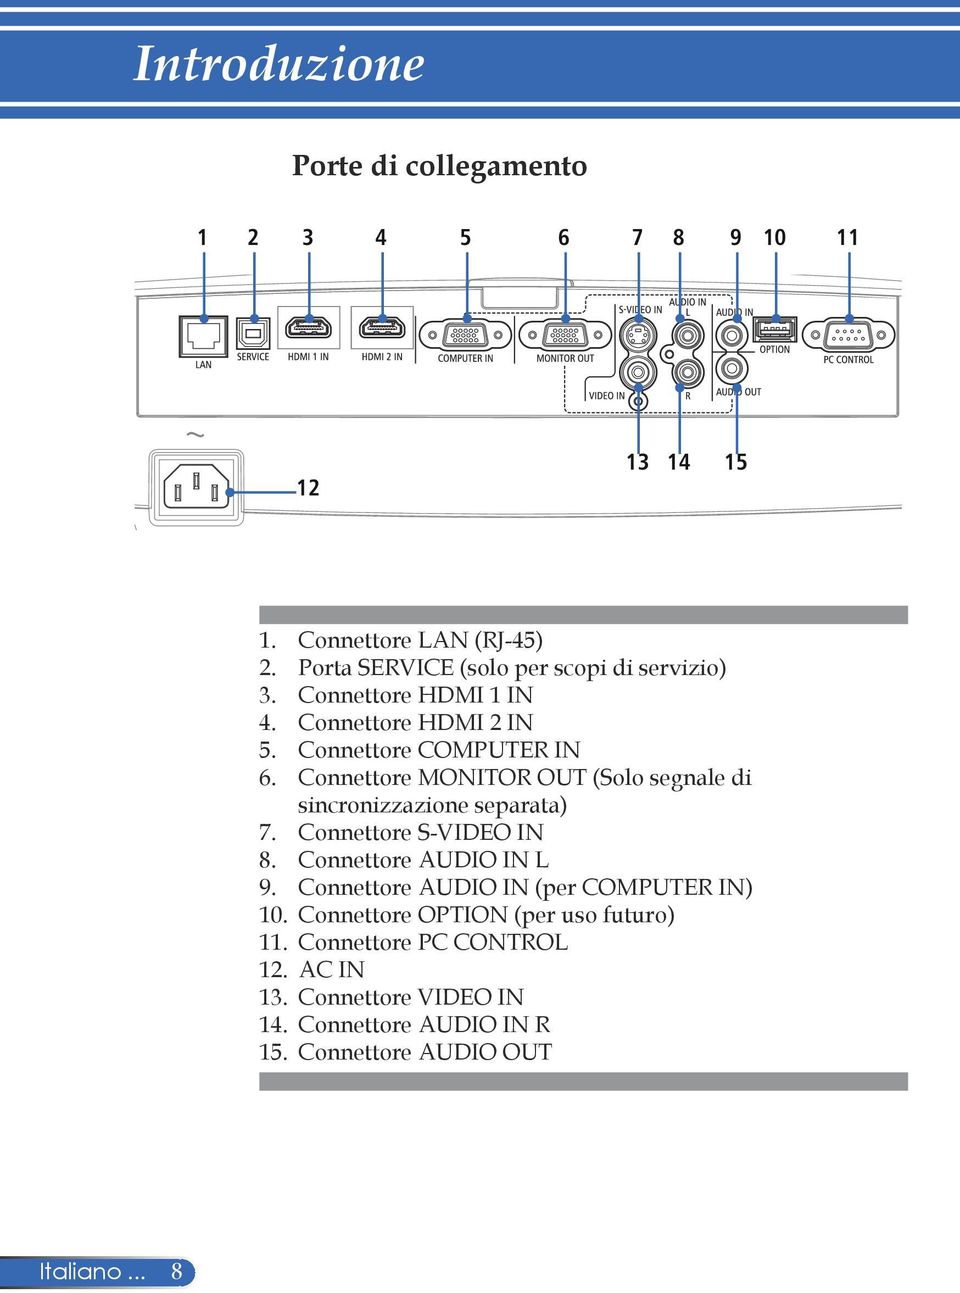 Connettore MONITOR OUT (Solo segnale di sincronizzazione separata) 7. Connettore S-VIDEO IN 8. Connettore AUDIO IN L 9.